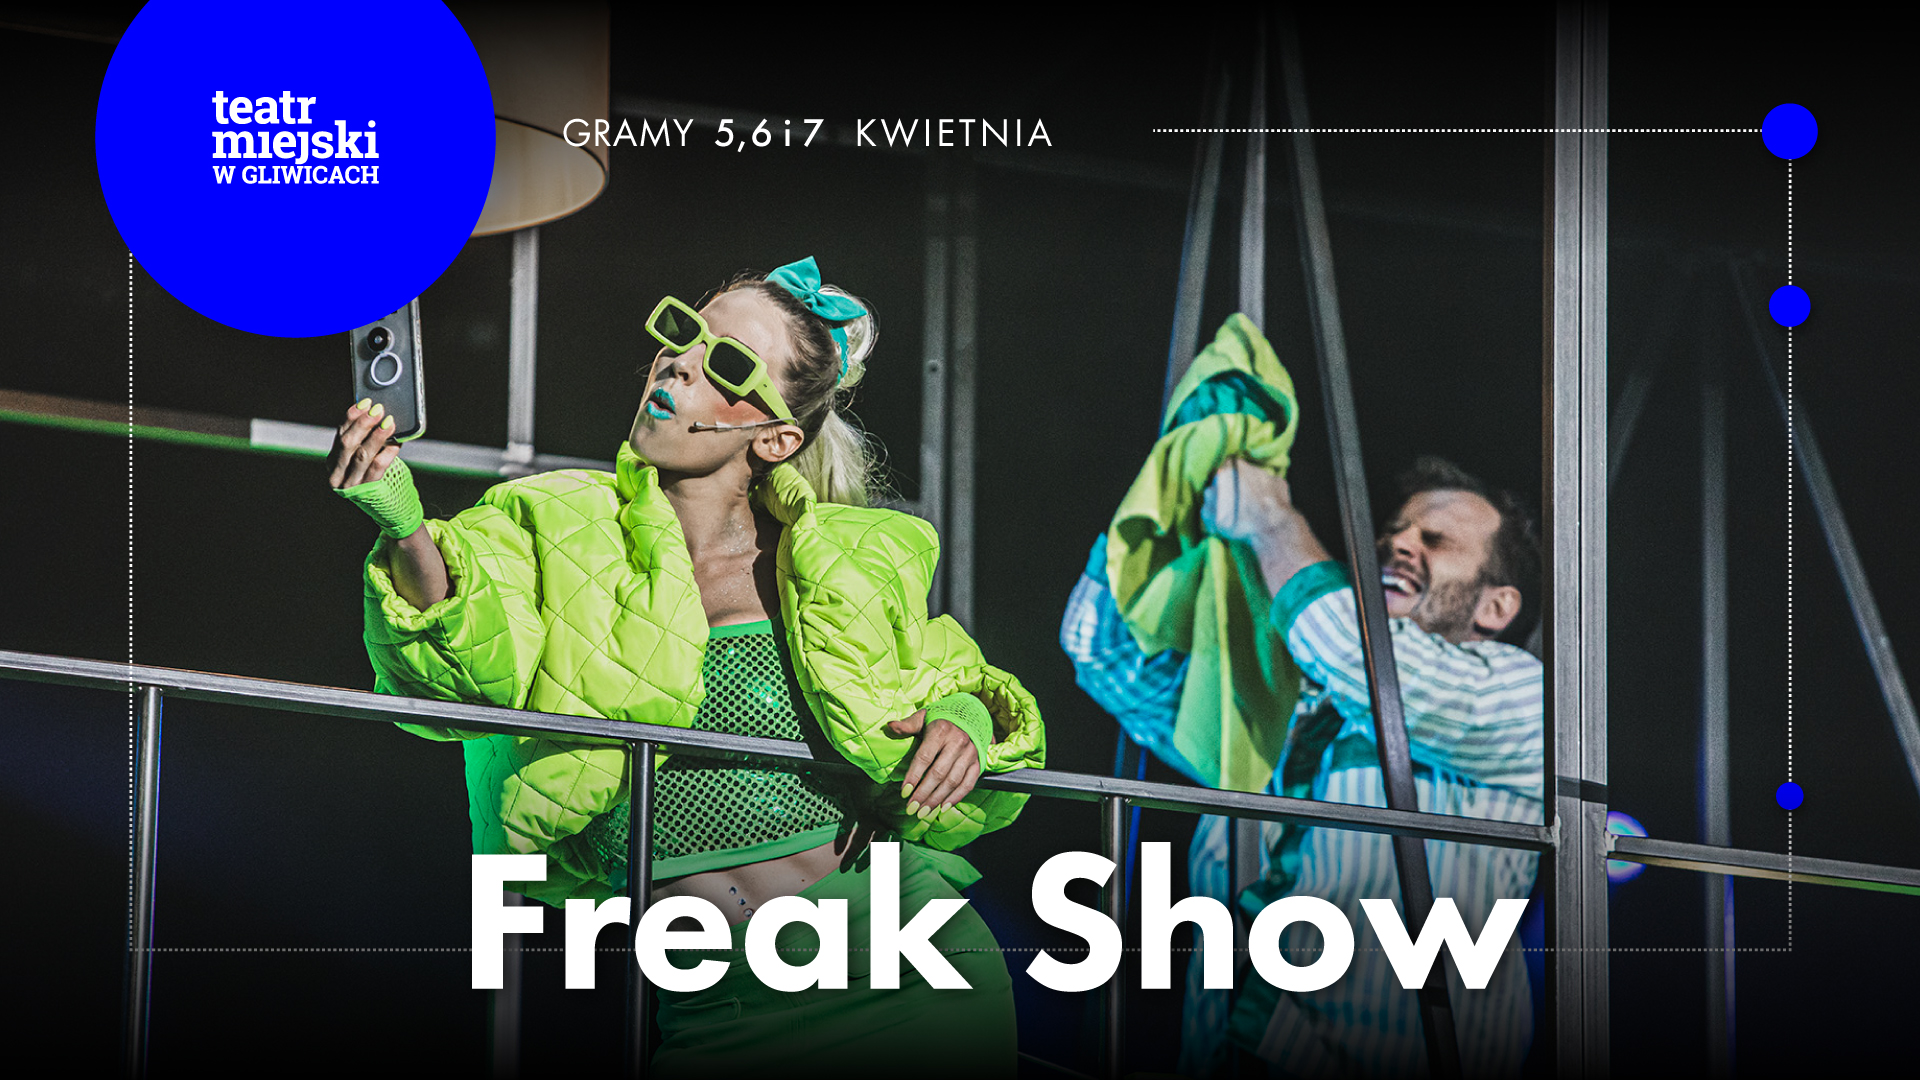 Baner promujący spektakl "Freak Show"